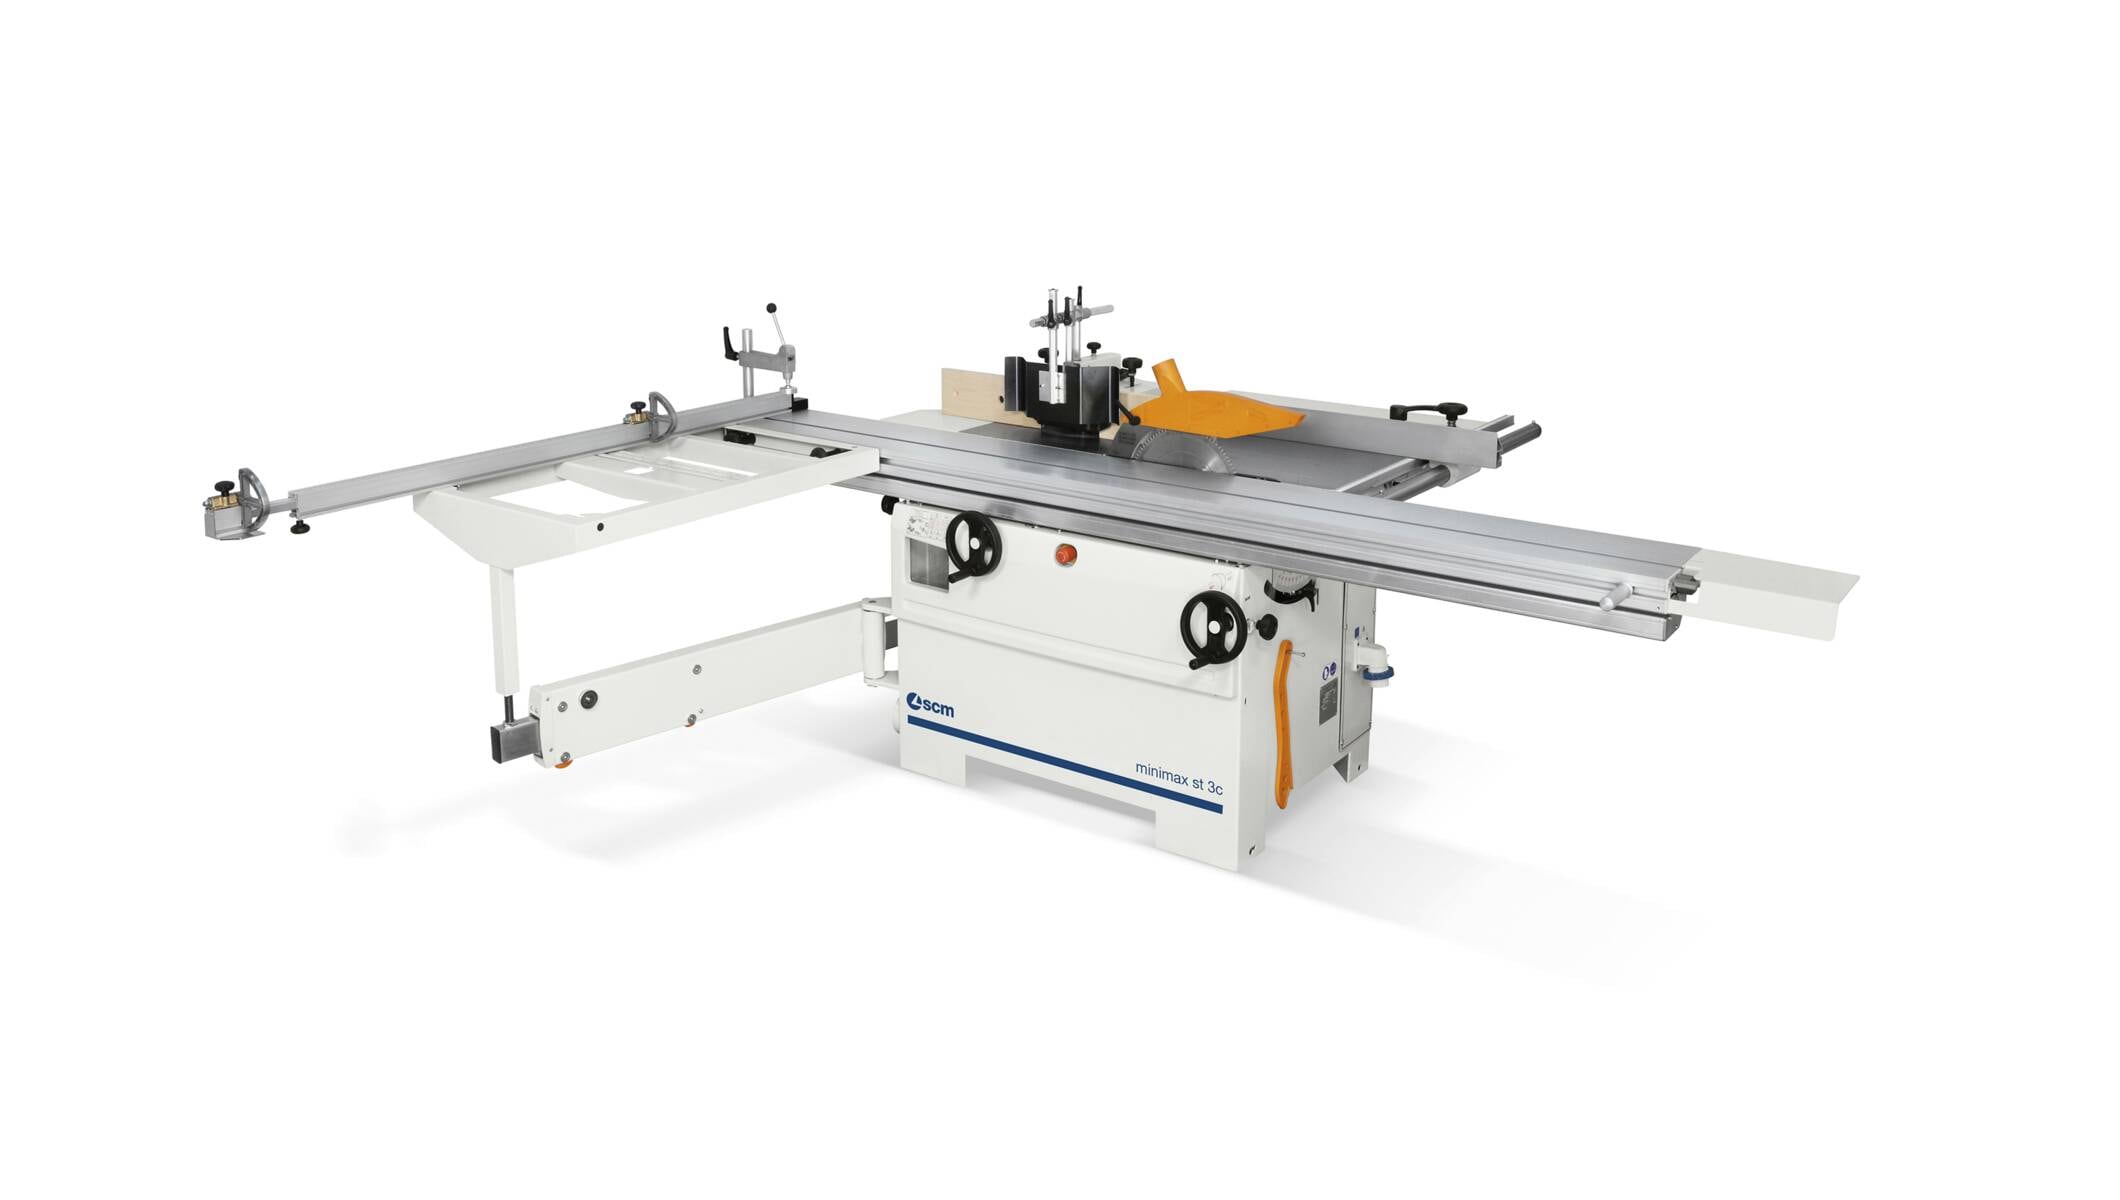 Tischlereimaschinen - Säge- und Fräsmaschine - minimax st 3c